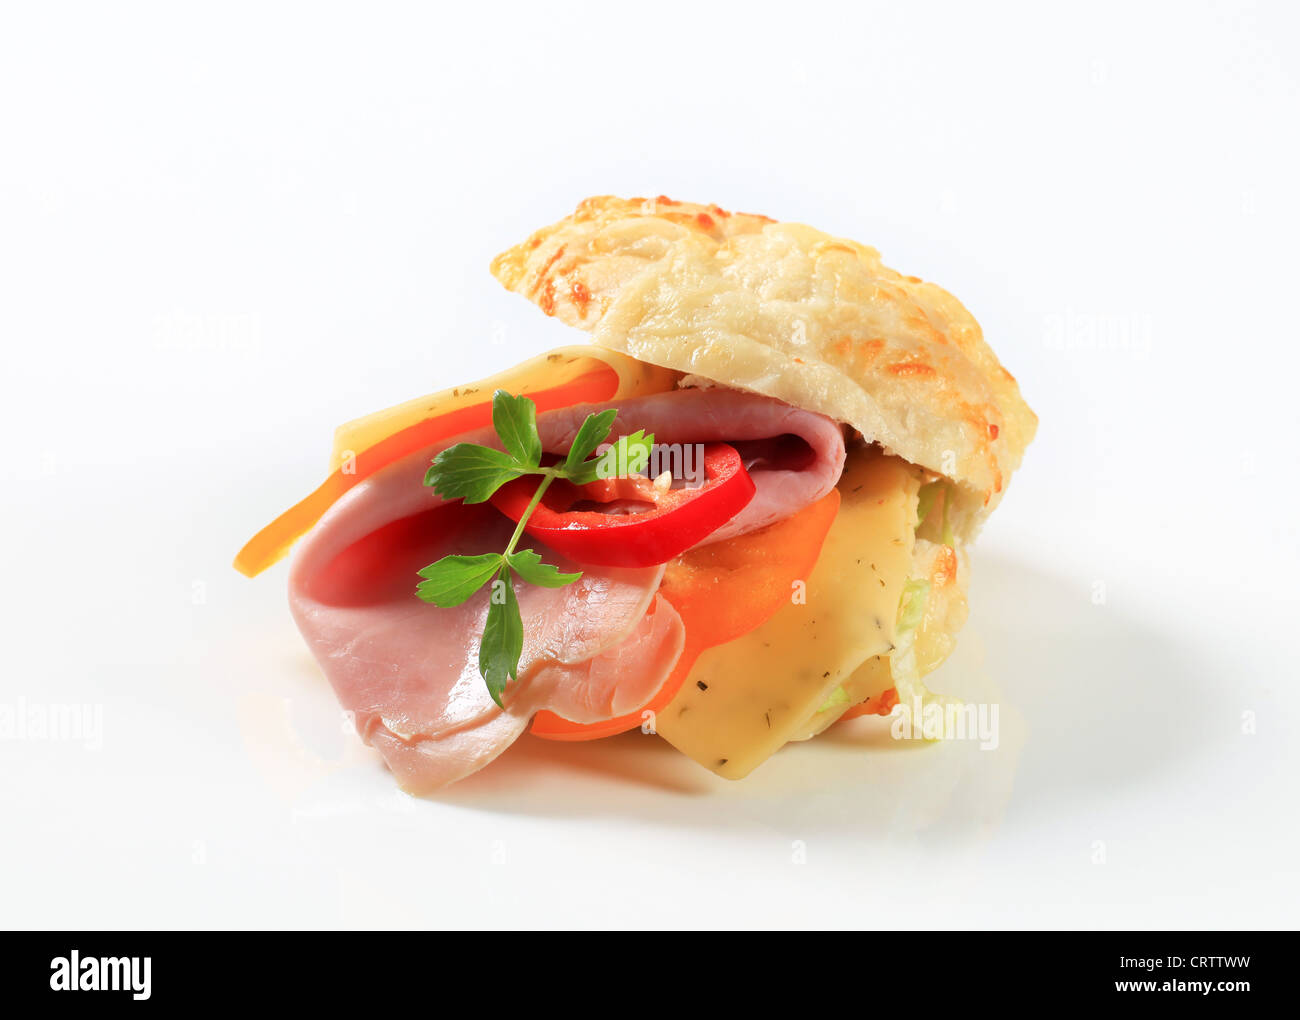 Ham and cheese sandwich - studio shot Stock Photo